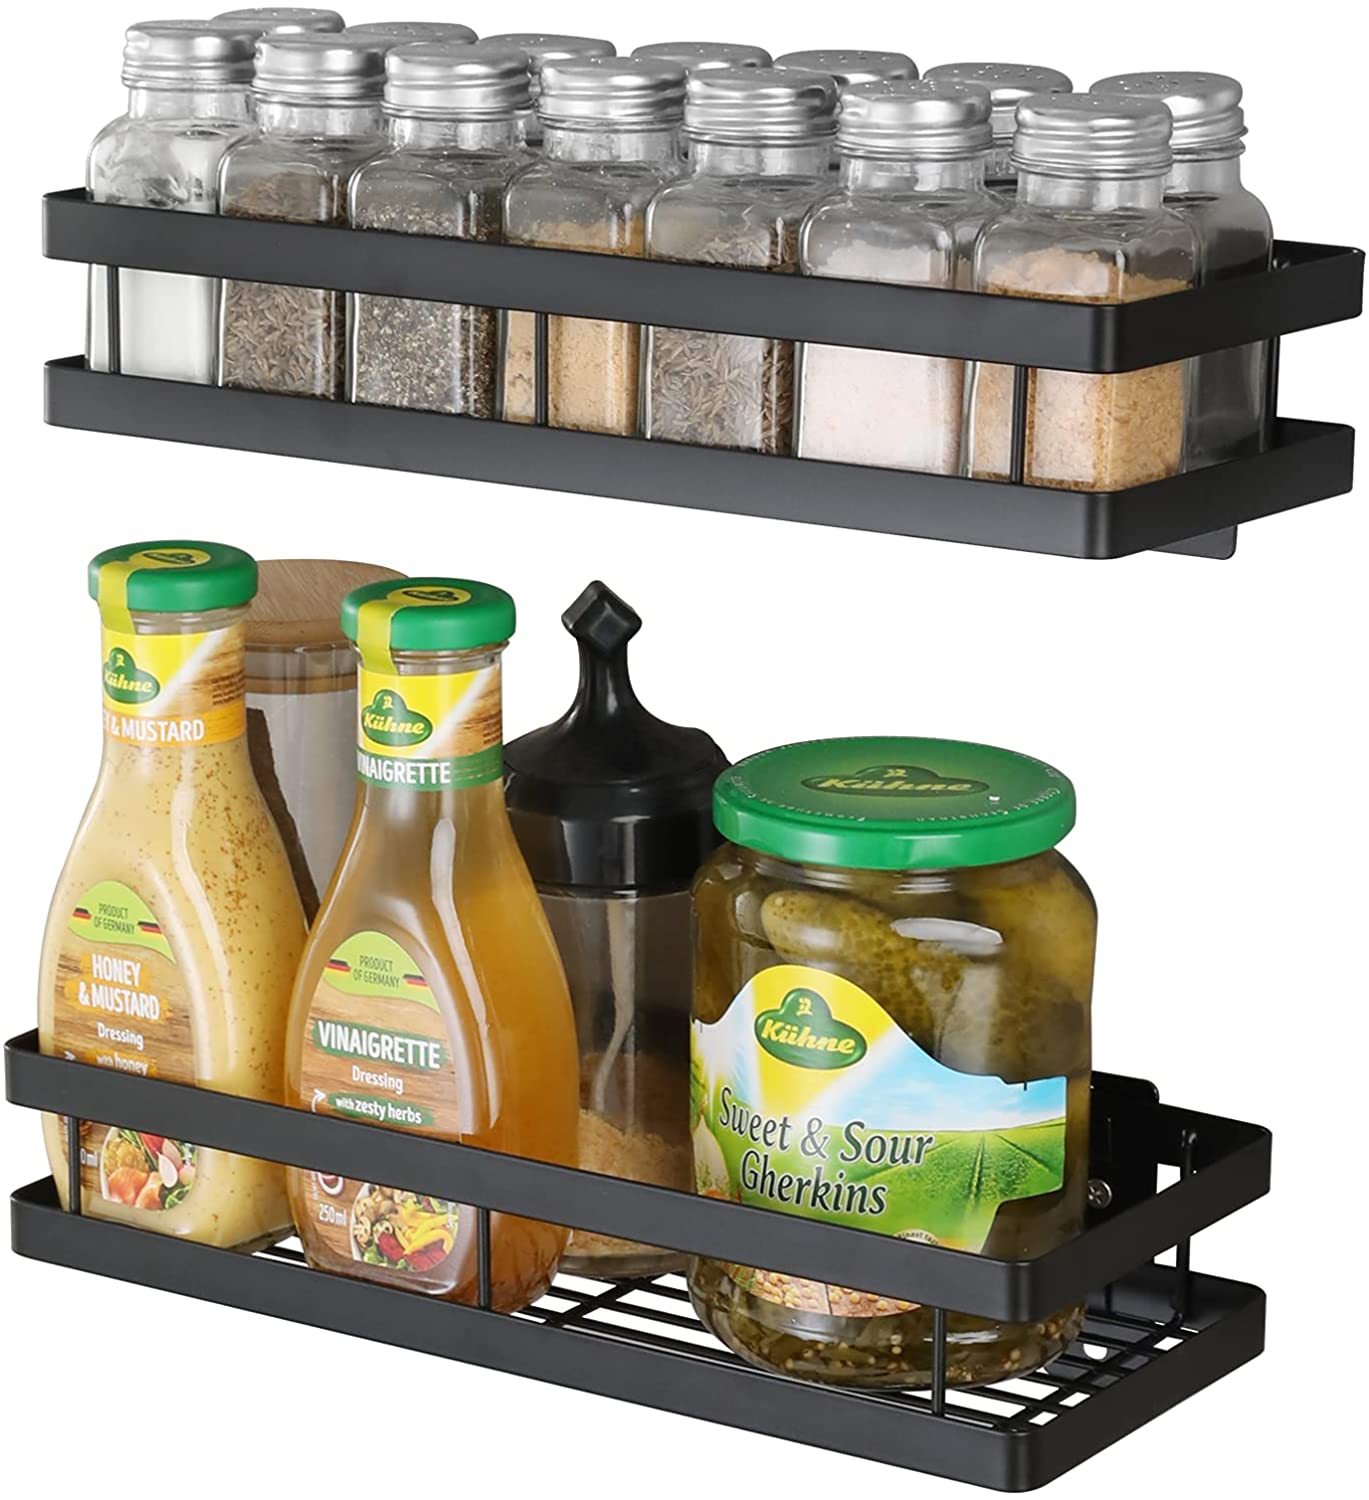 2 Pack Hanging Corner Spice bottle Shelf Holder Storage Rack for Kitchen or Bathroom Shower Caddy Featured Image